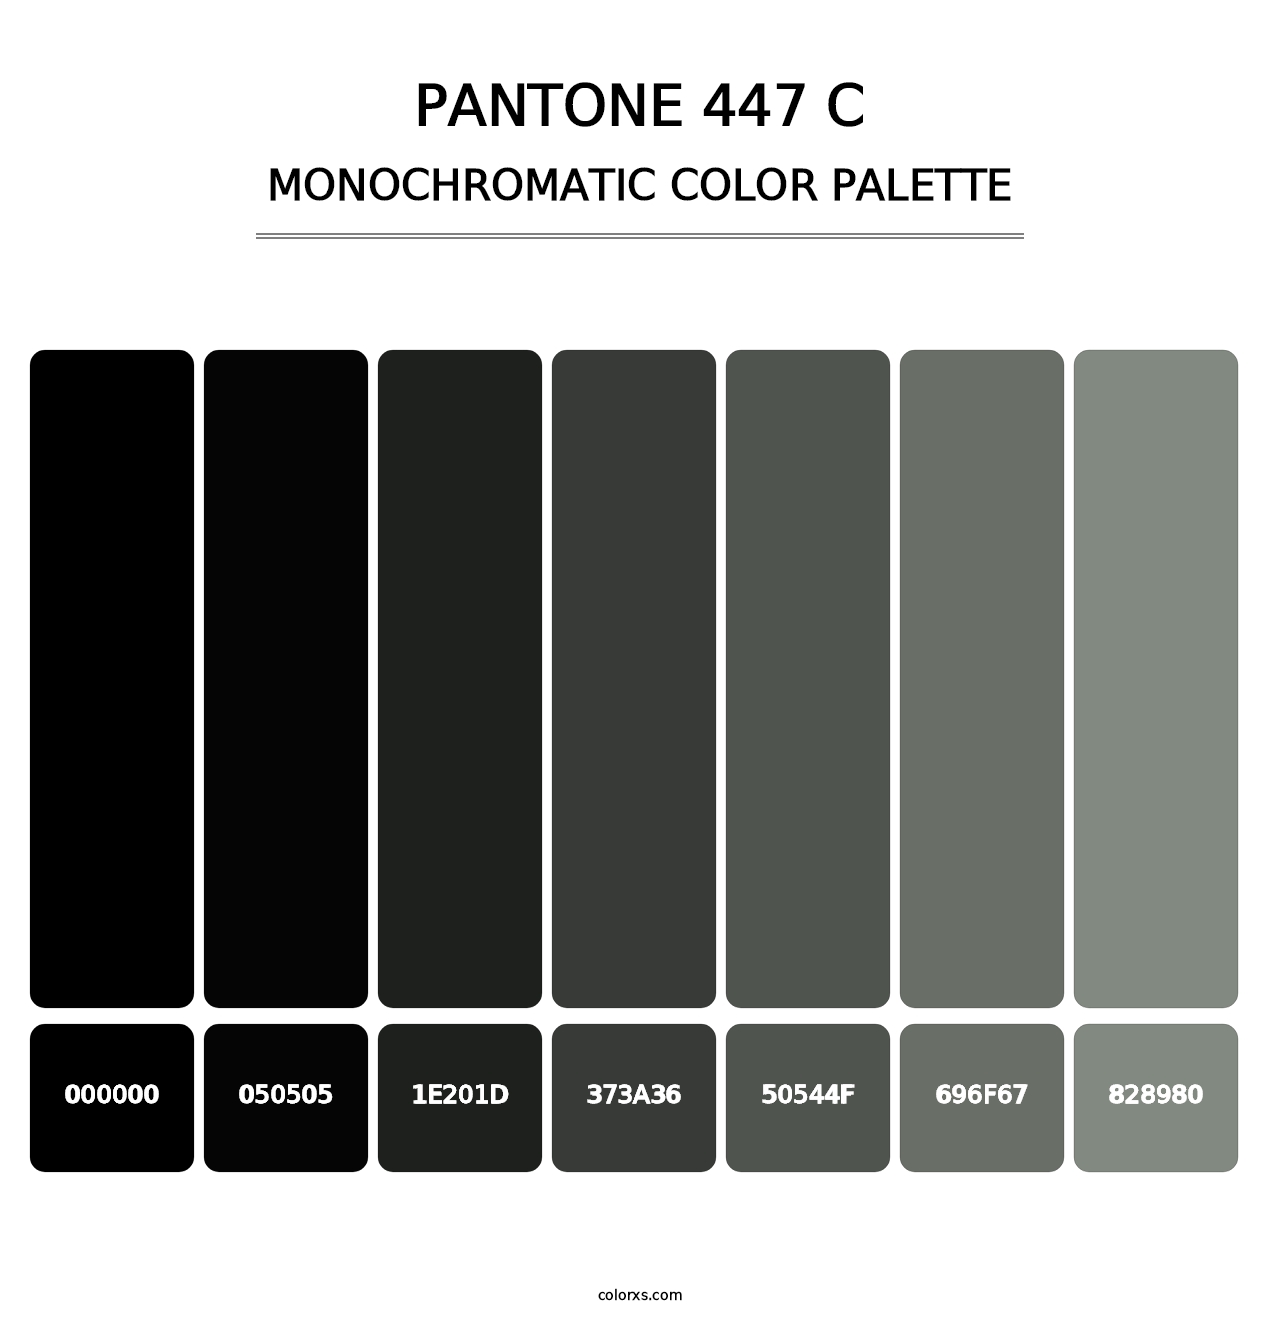 PANTONE 447 C - Monochromatic Color Palette